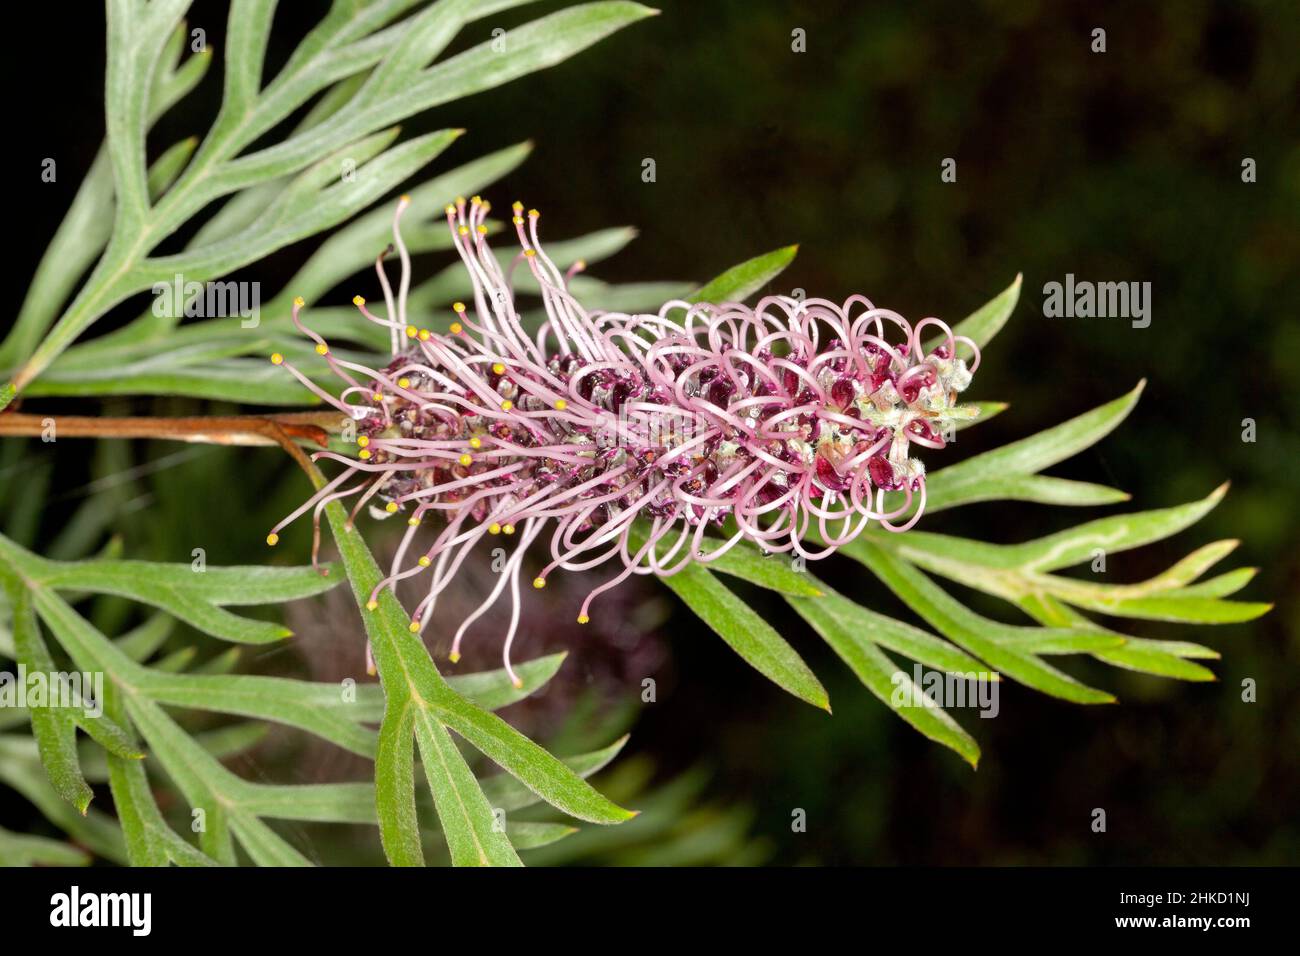 Fiore malva e foglie verdi di Grevillea 'Dorothy Gordon', pianta nativa australiana, su sfondo scuro Foto Stock